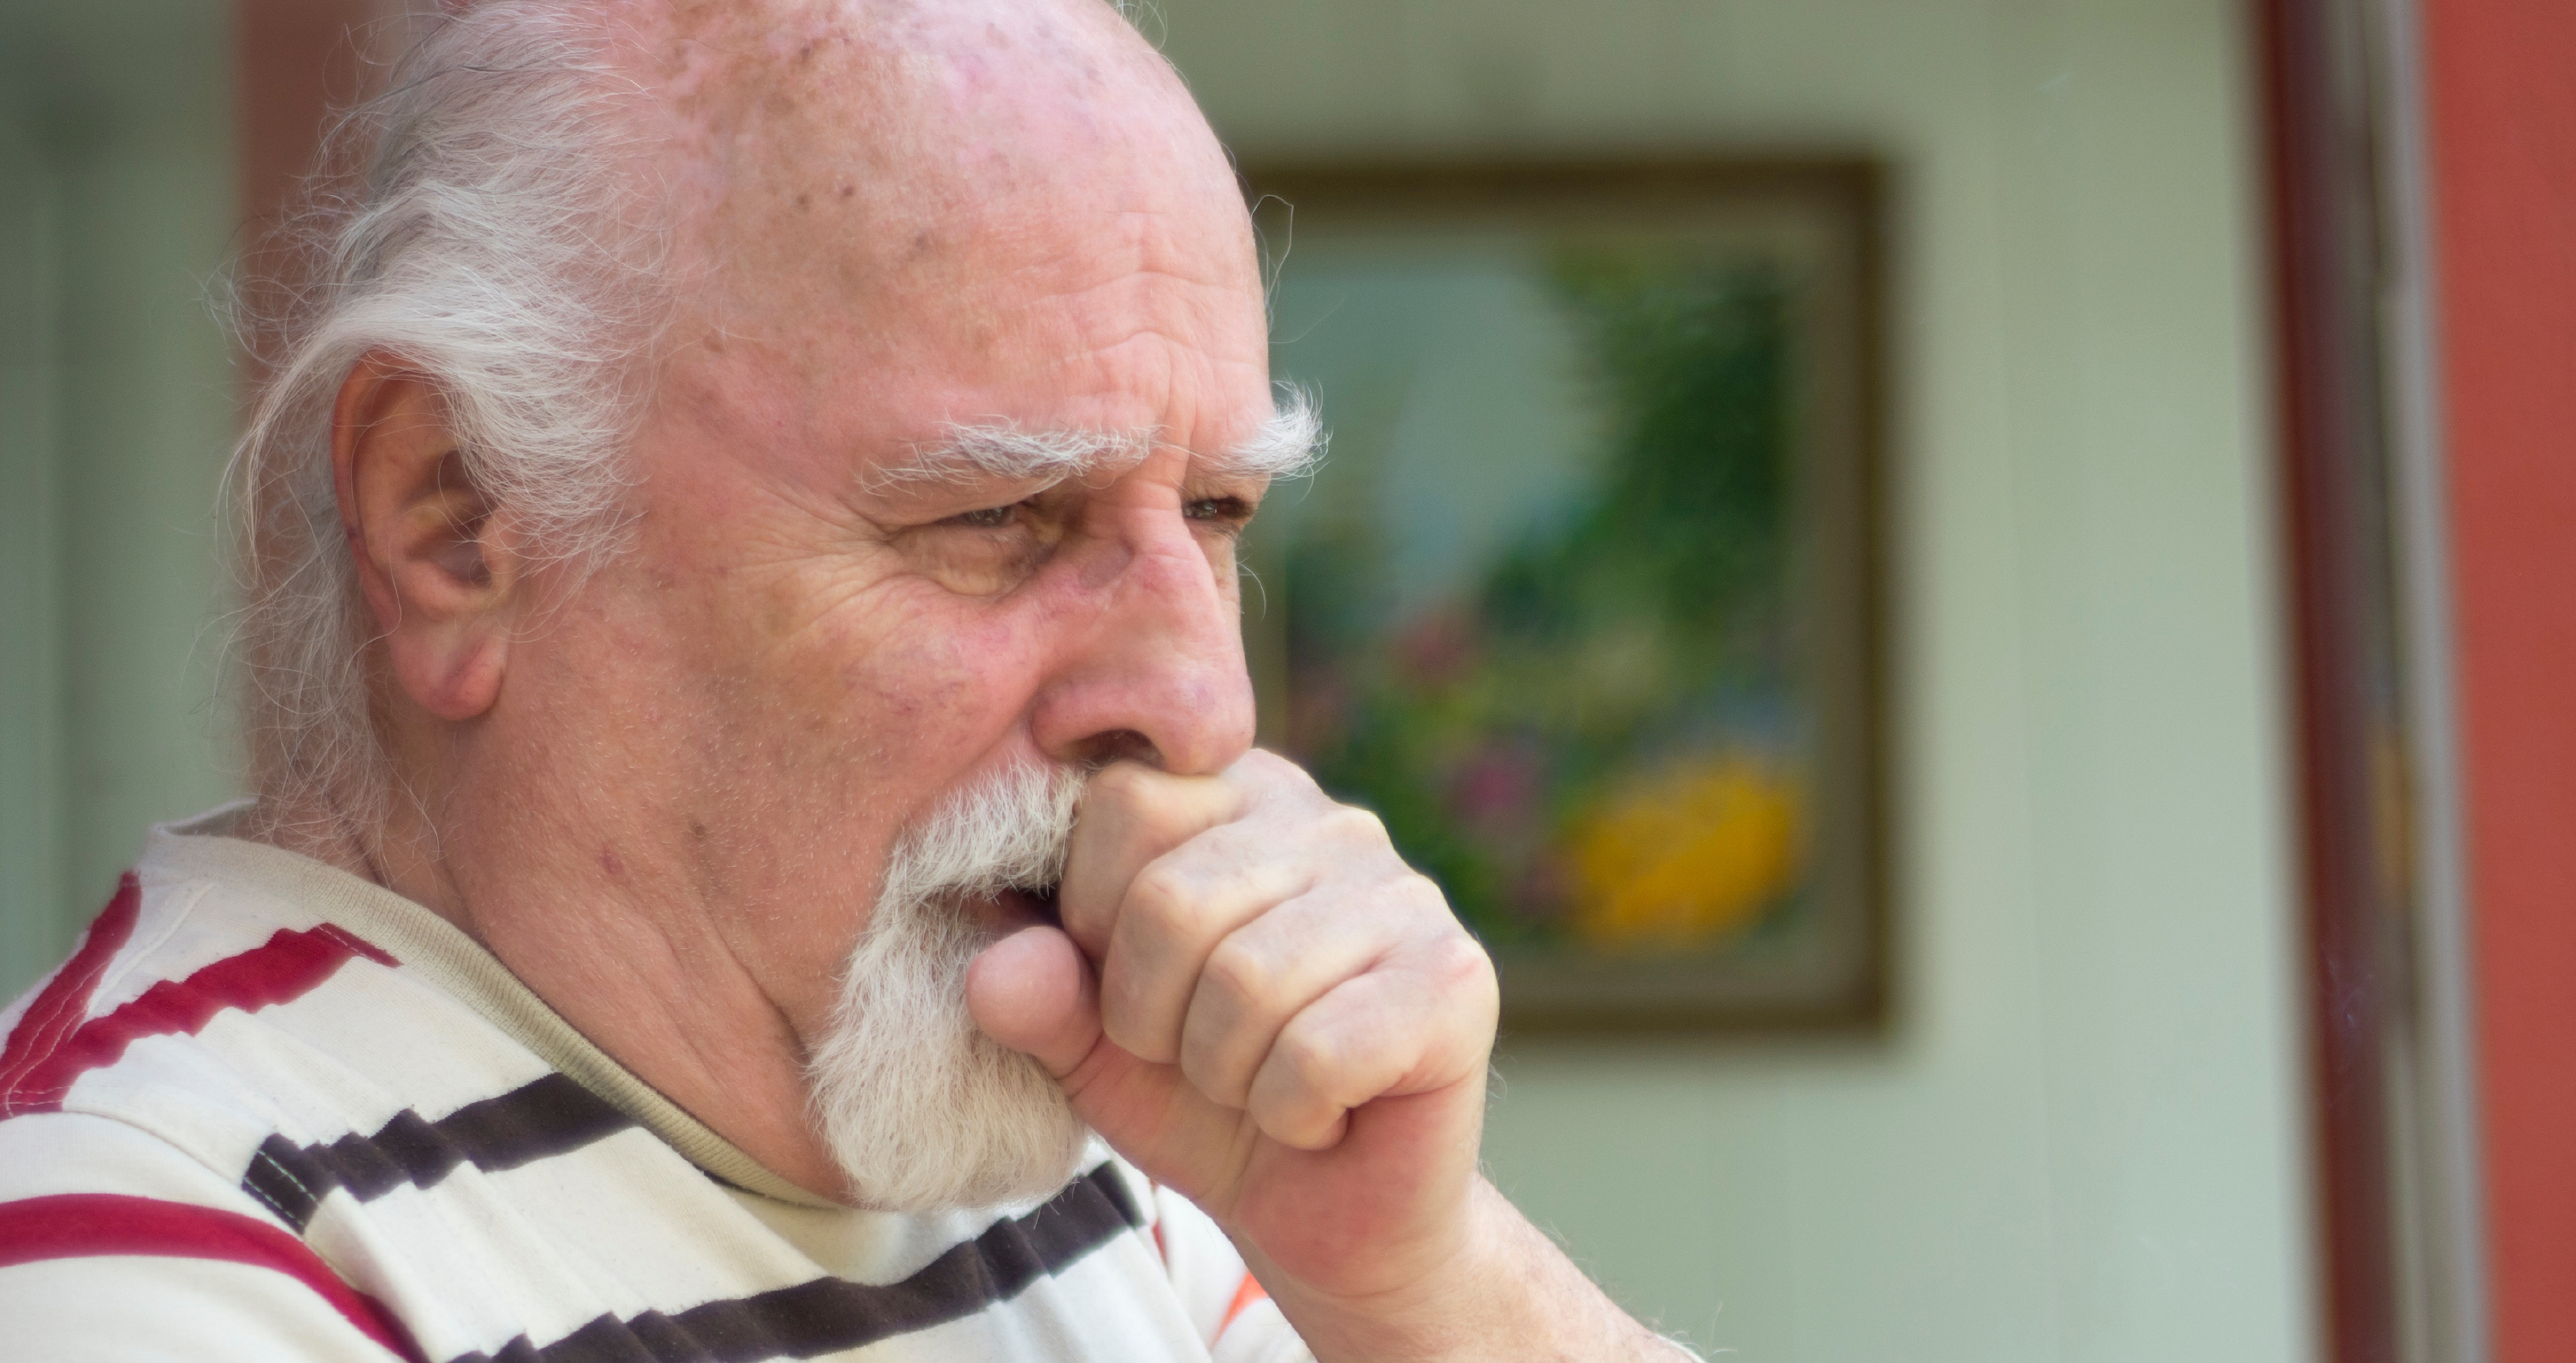 Niet alleen een 'rokershoestje': 3 symptomen die COPD kunnen zijn